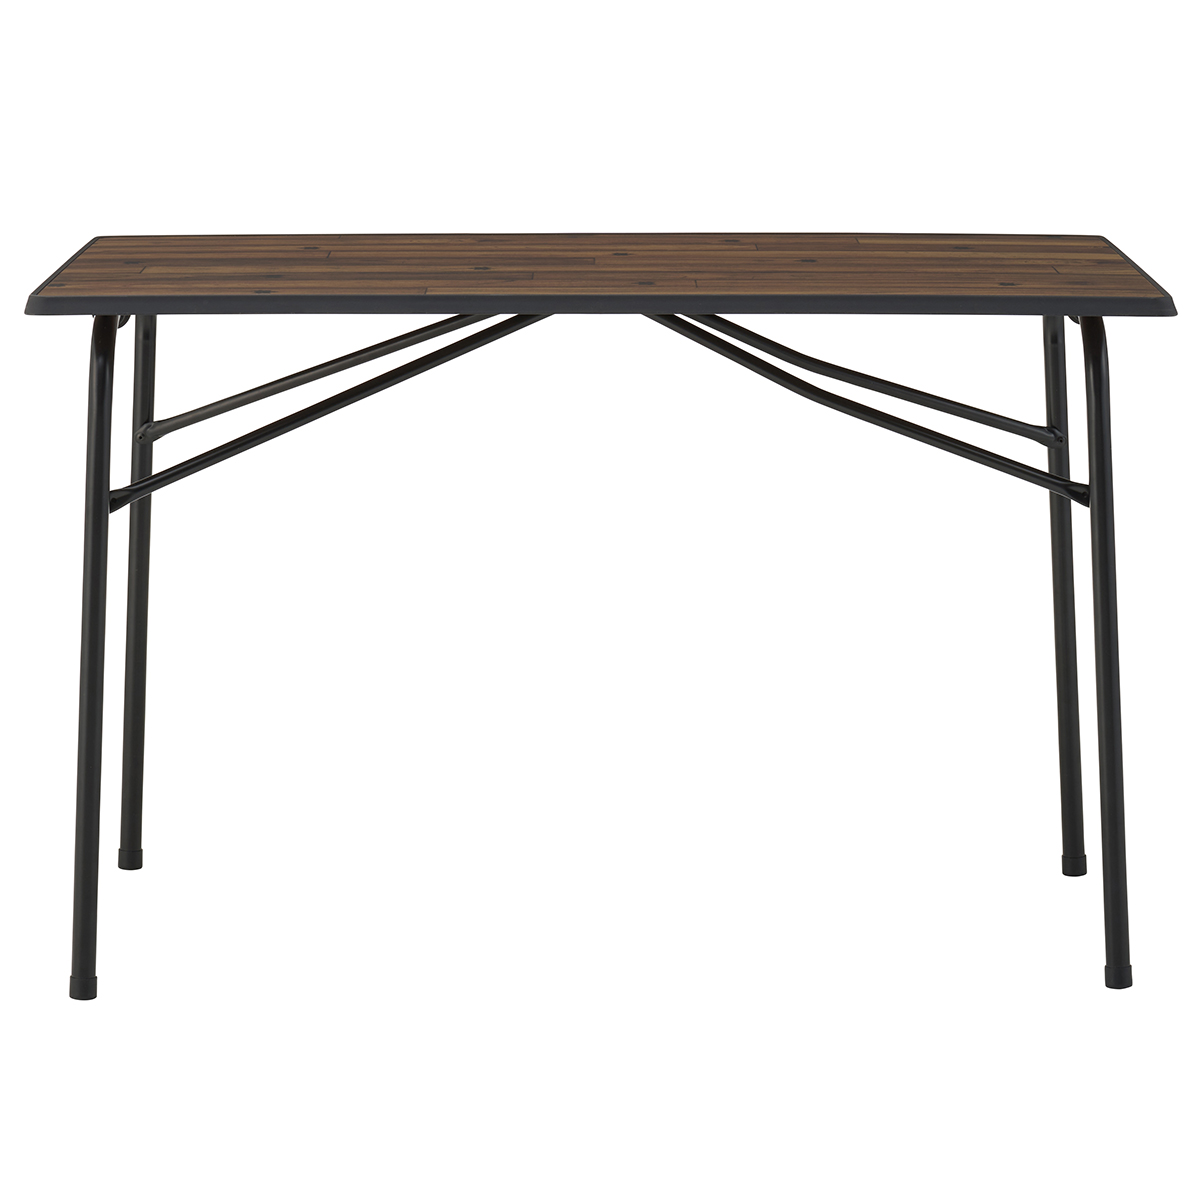 アウトドア テーブル/チェア Tracksleeper ワークアイアン100kテーブル|ギア|家具|テーブル|製品 